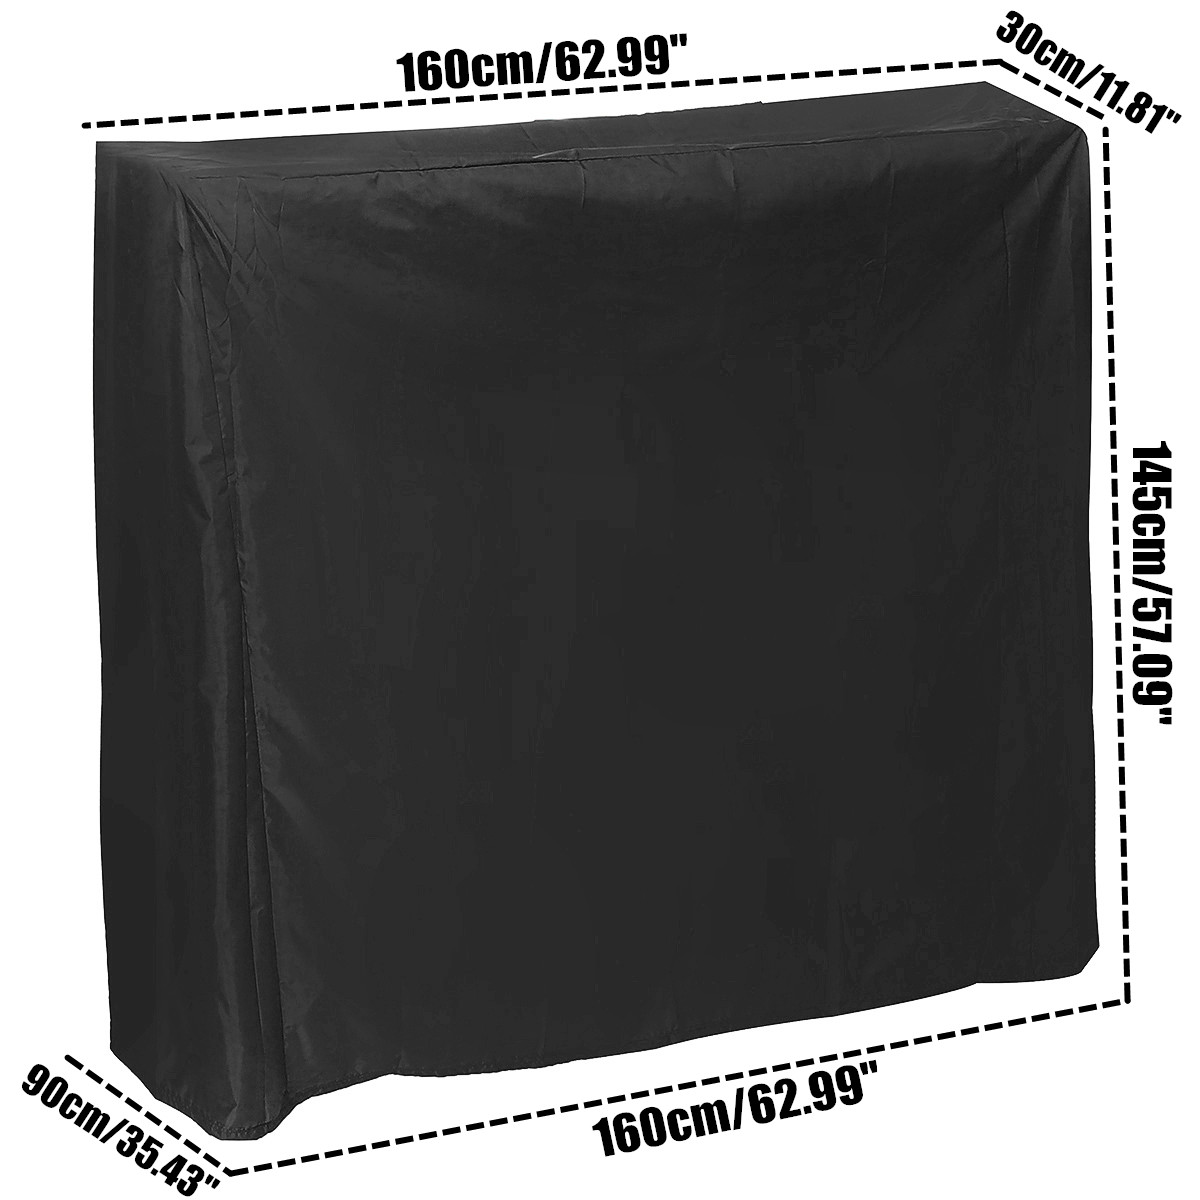 Black-Table-Tennis-Protector-160cm-Waterproof-Dustproof-Ping-Pong-Table-Storage-Cover-1637115-8